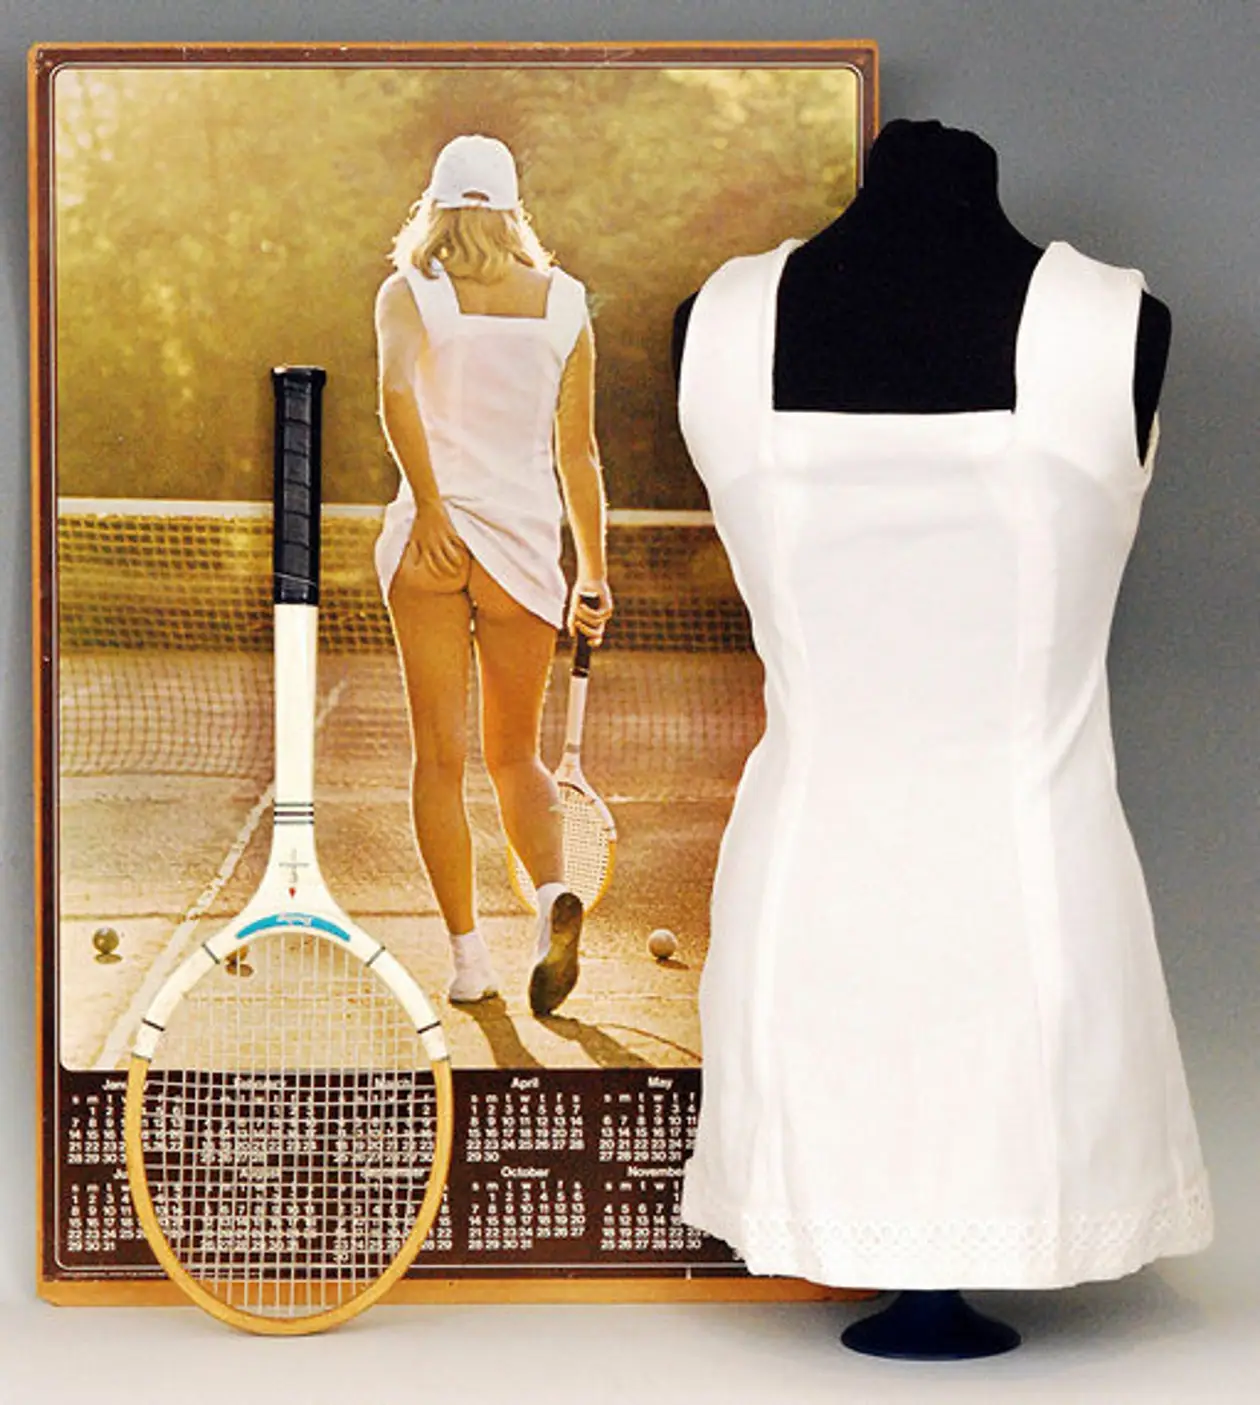 На легендарном теннисном постере красивая девушка показала попу. Мы не могли пройти мимо